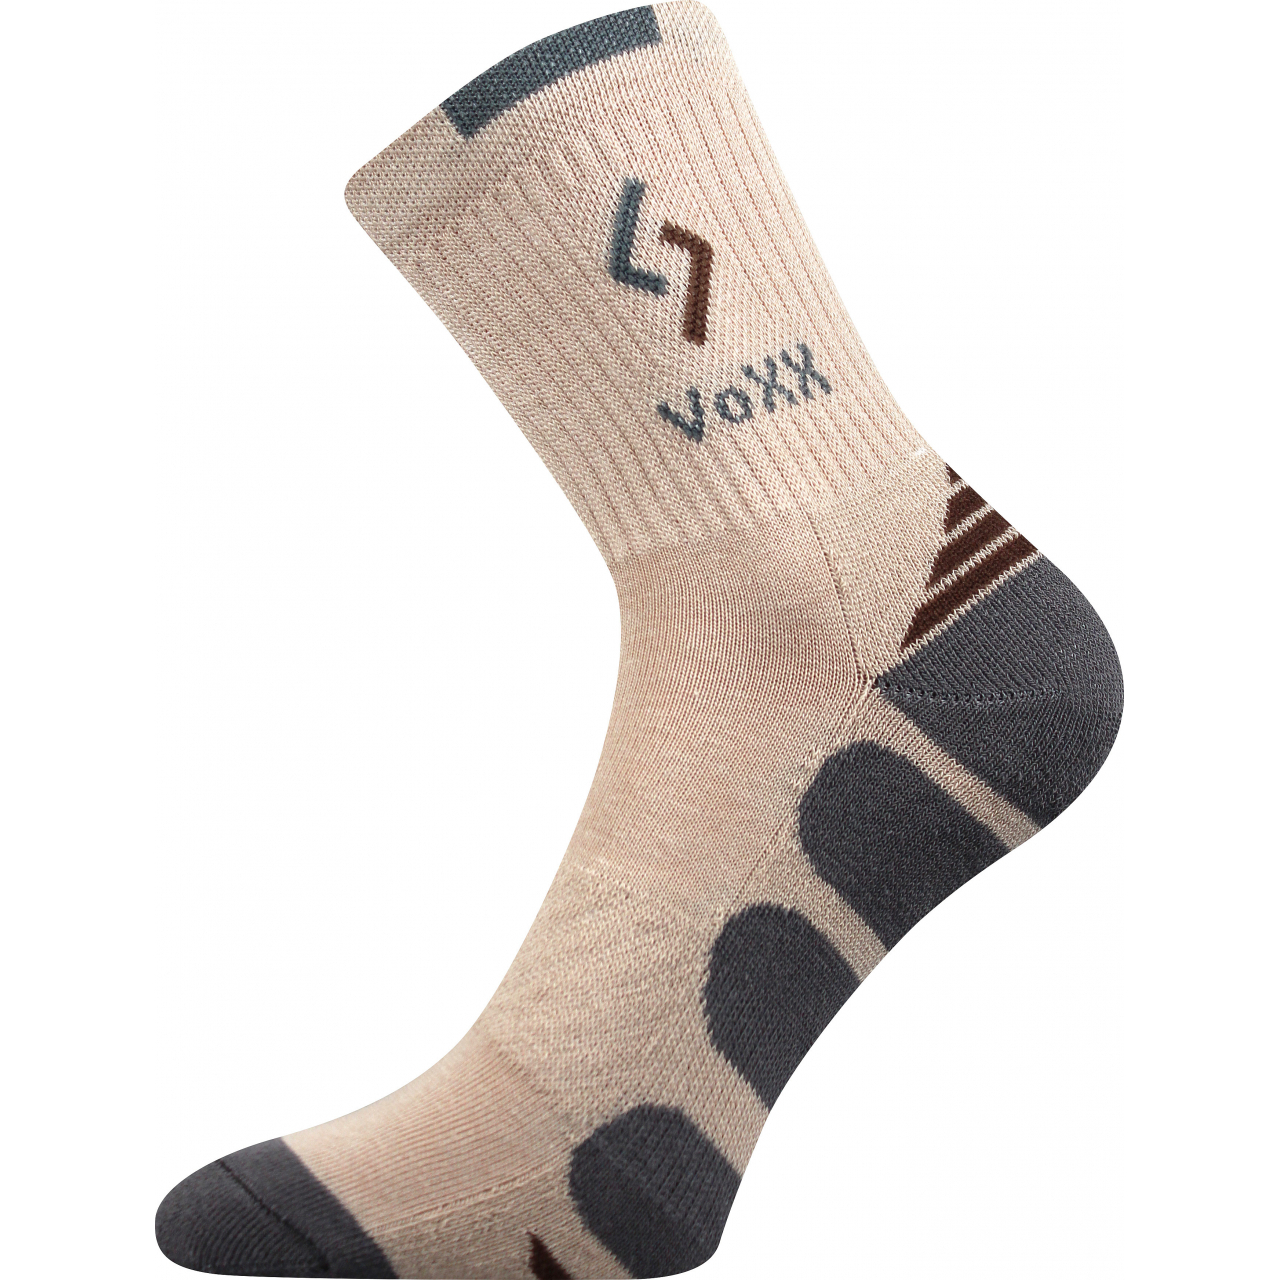 Ponožky sportovní Voxx Tronic - béžové-šedé, 43-46